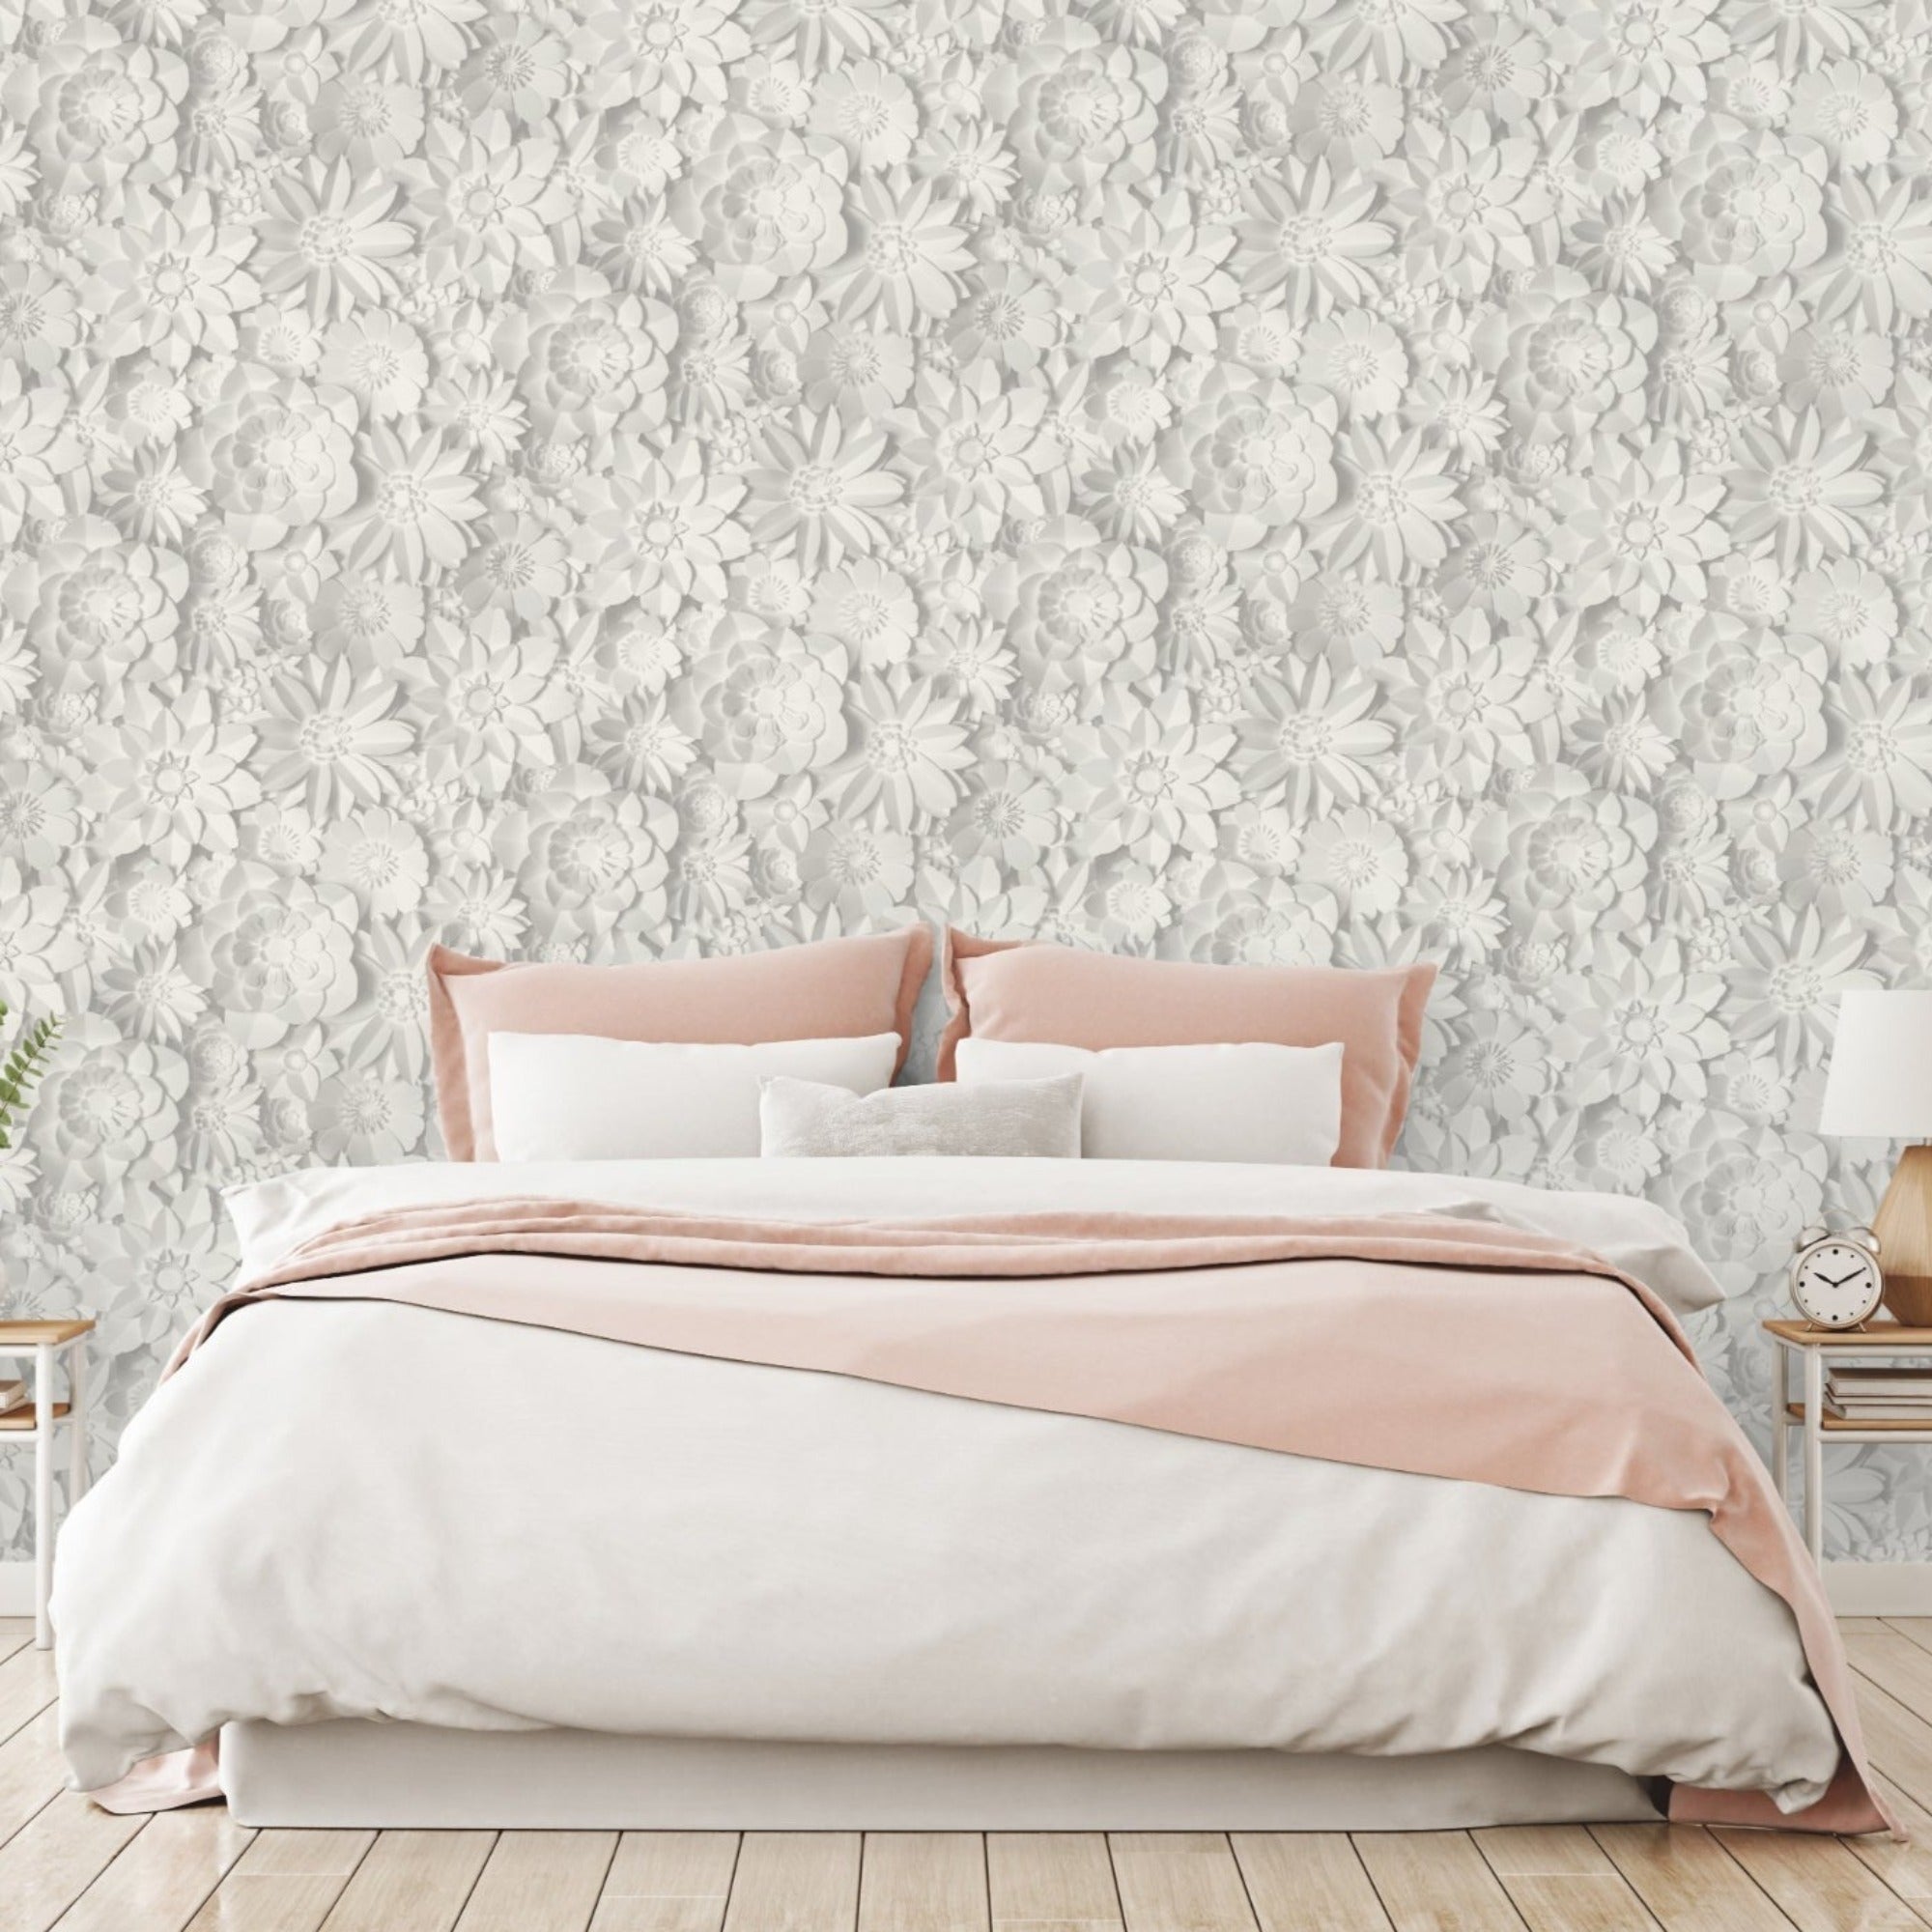 Fine Decor Wallpaper | Dimensions Floral White/Grey | FD42554